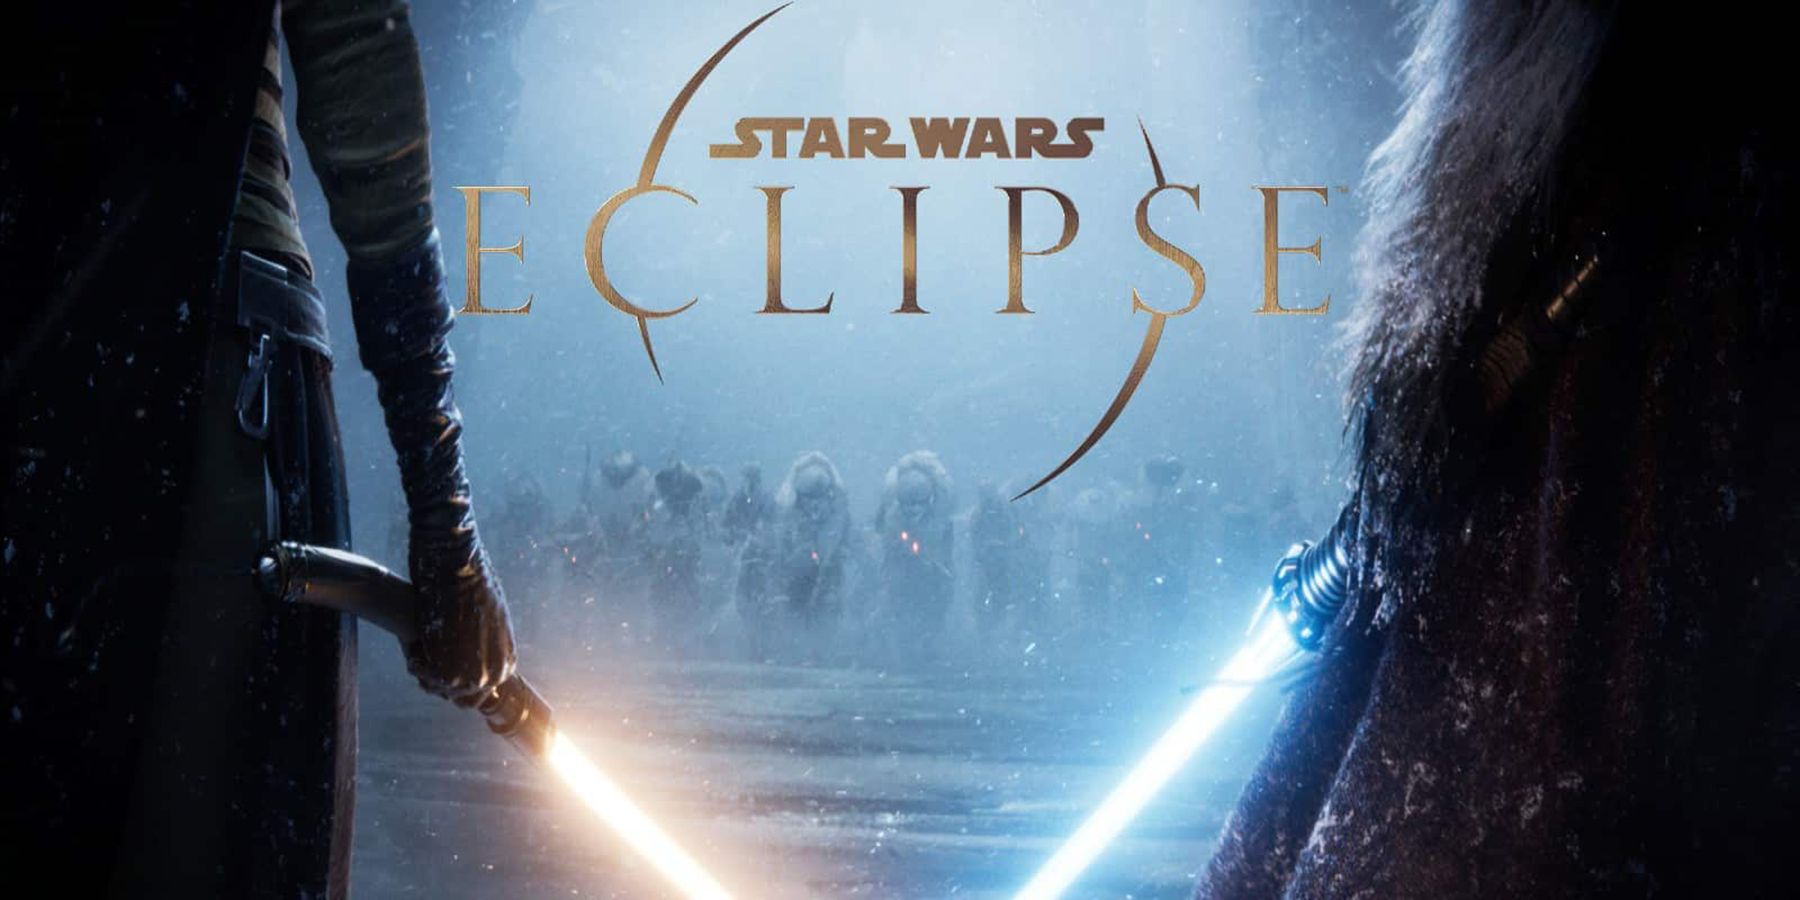 I problemi con Star Wars Eclipse sono diventati noti. Al momento non si sa cosa farà dopo aver lasciato il posto